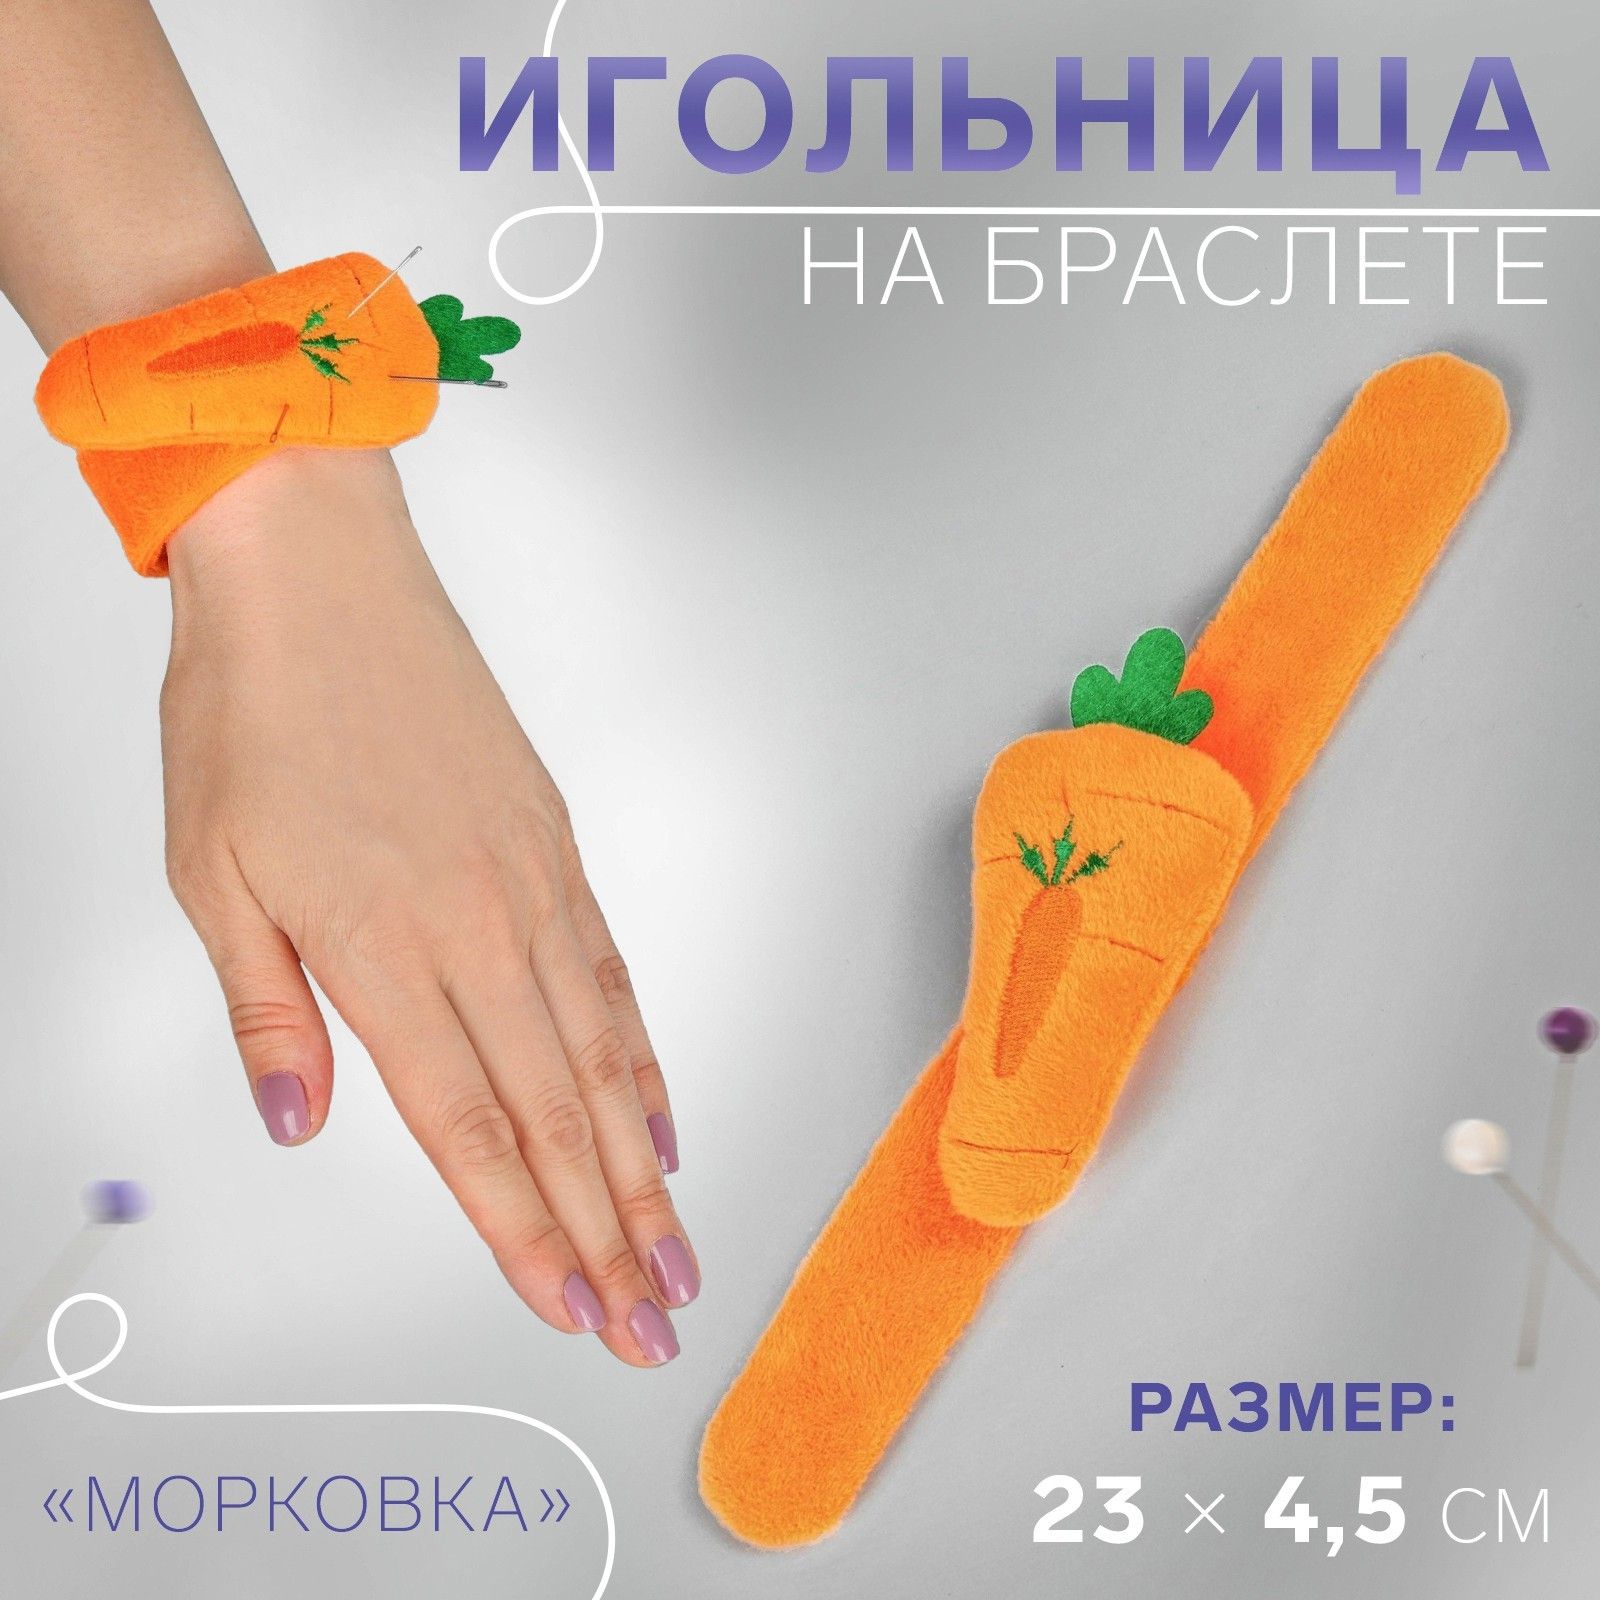 Игольница на браслете морковка23*4,5*3см оранжевый